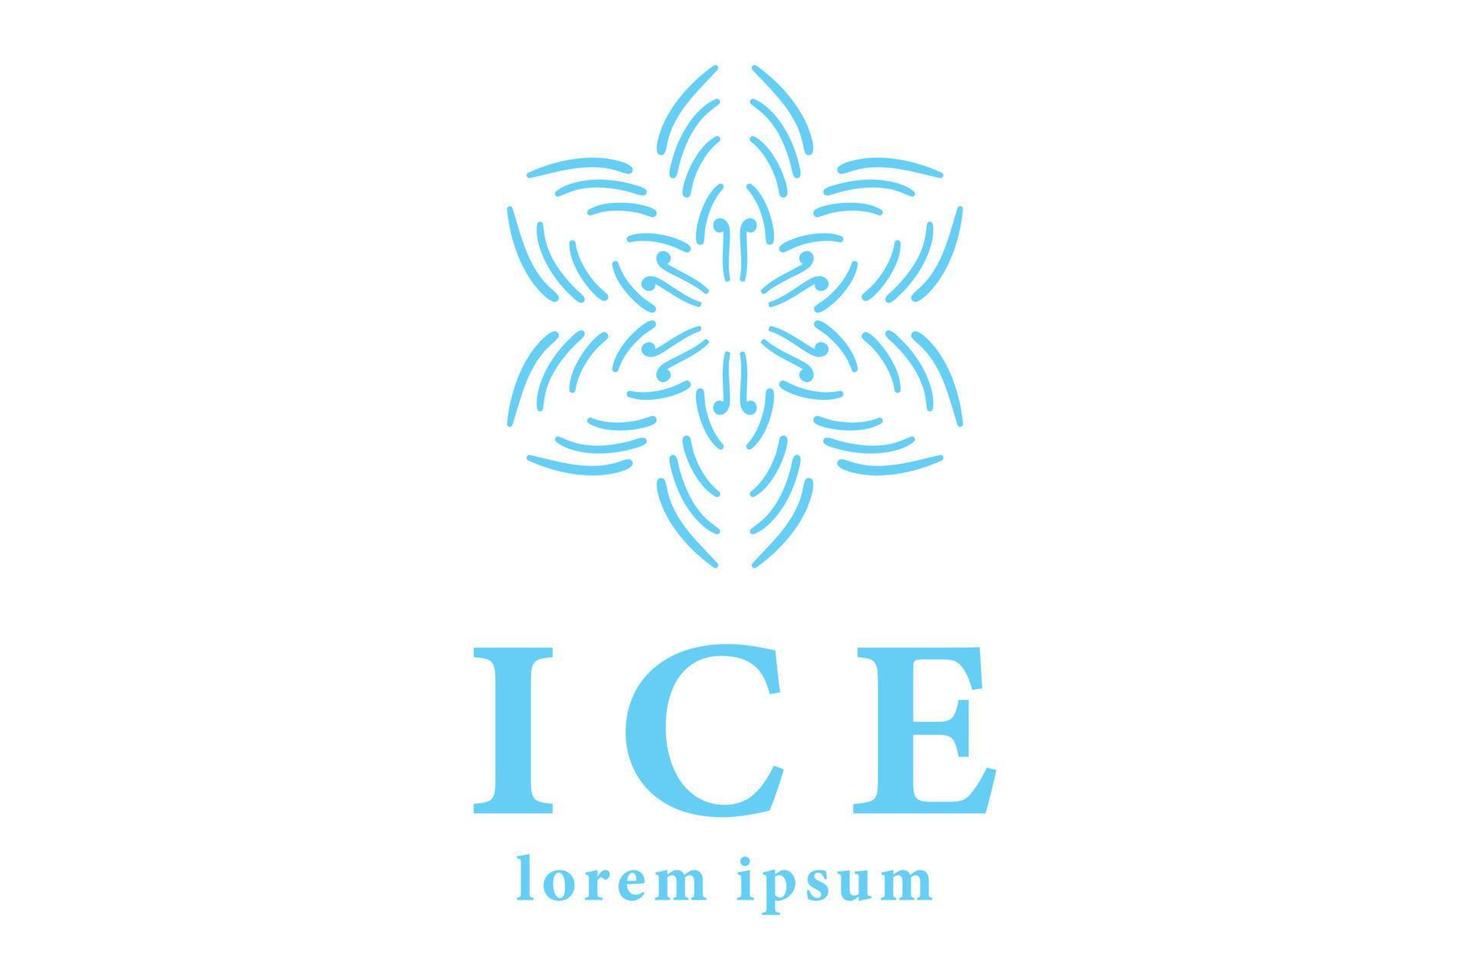 création d'icône logo cristal glace vecteur